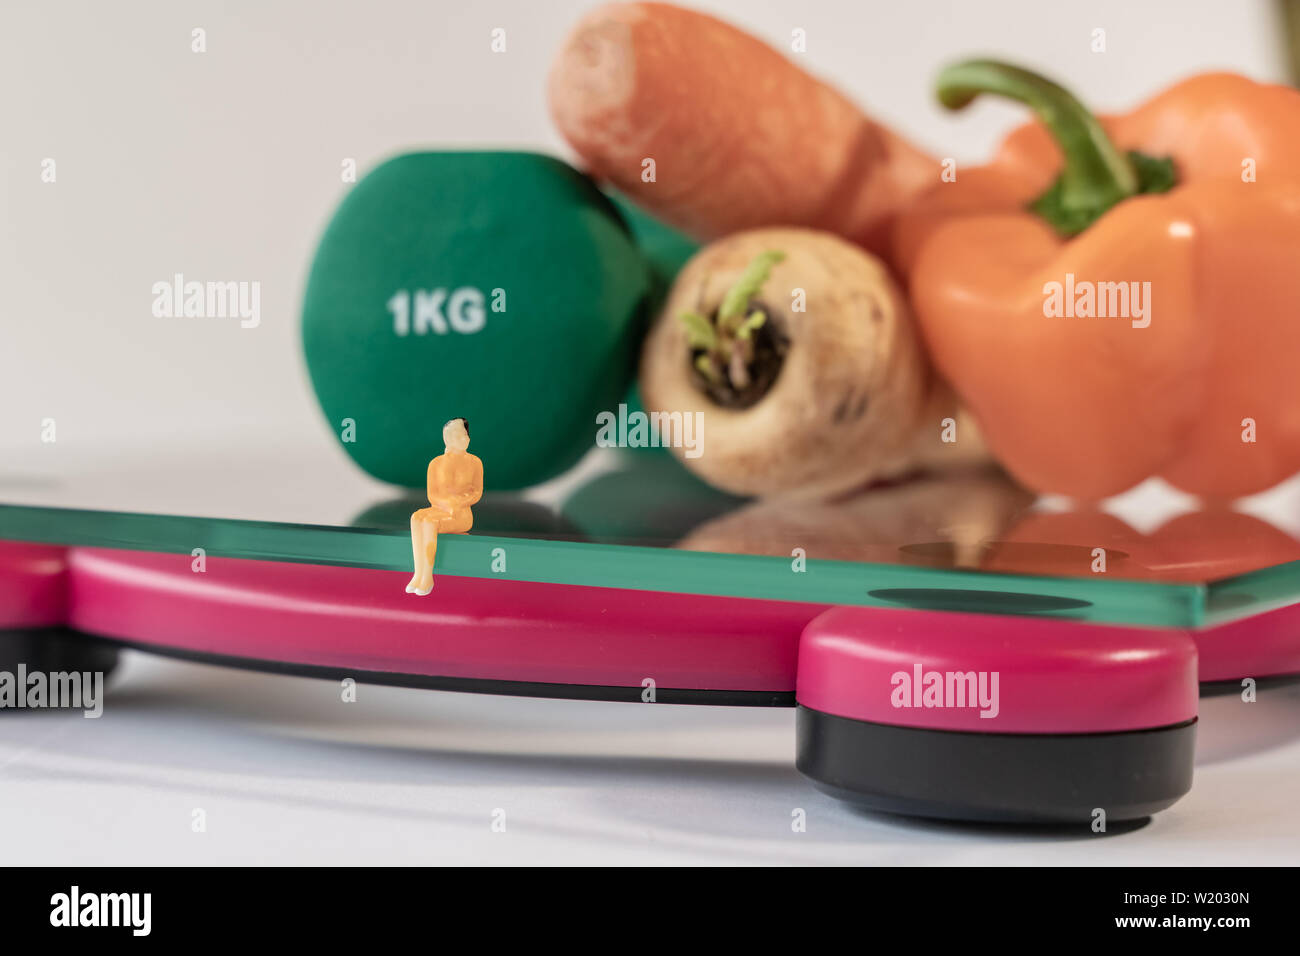 Miniatur Frau Abbildung verlegen auf die digitale elektronische Personenwaage, die für das Gewicht des menschlichen Körpers. Frisches Gemüse und grüne Kurzhanteln in geringer Tiefe Stockfoto